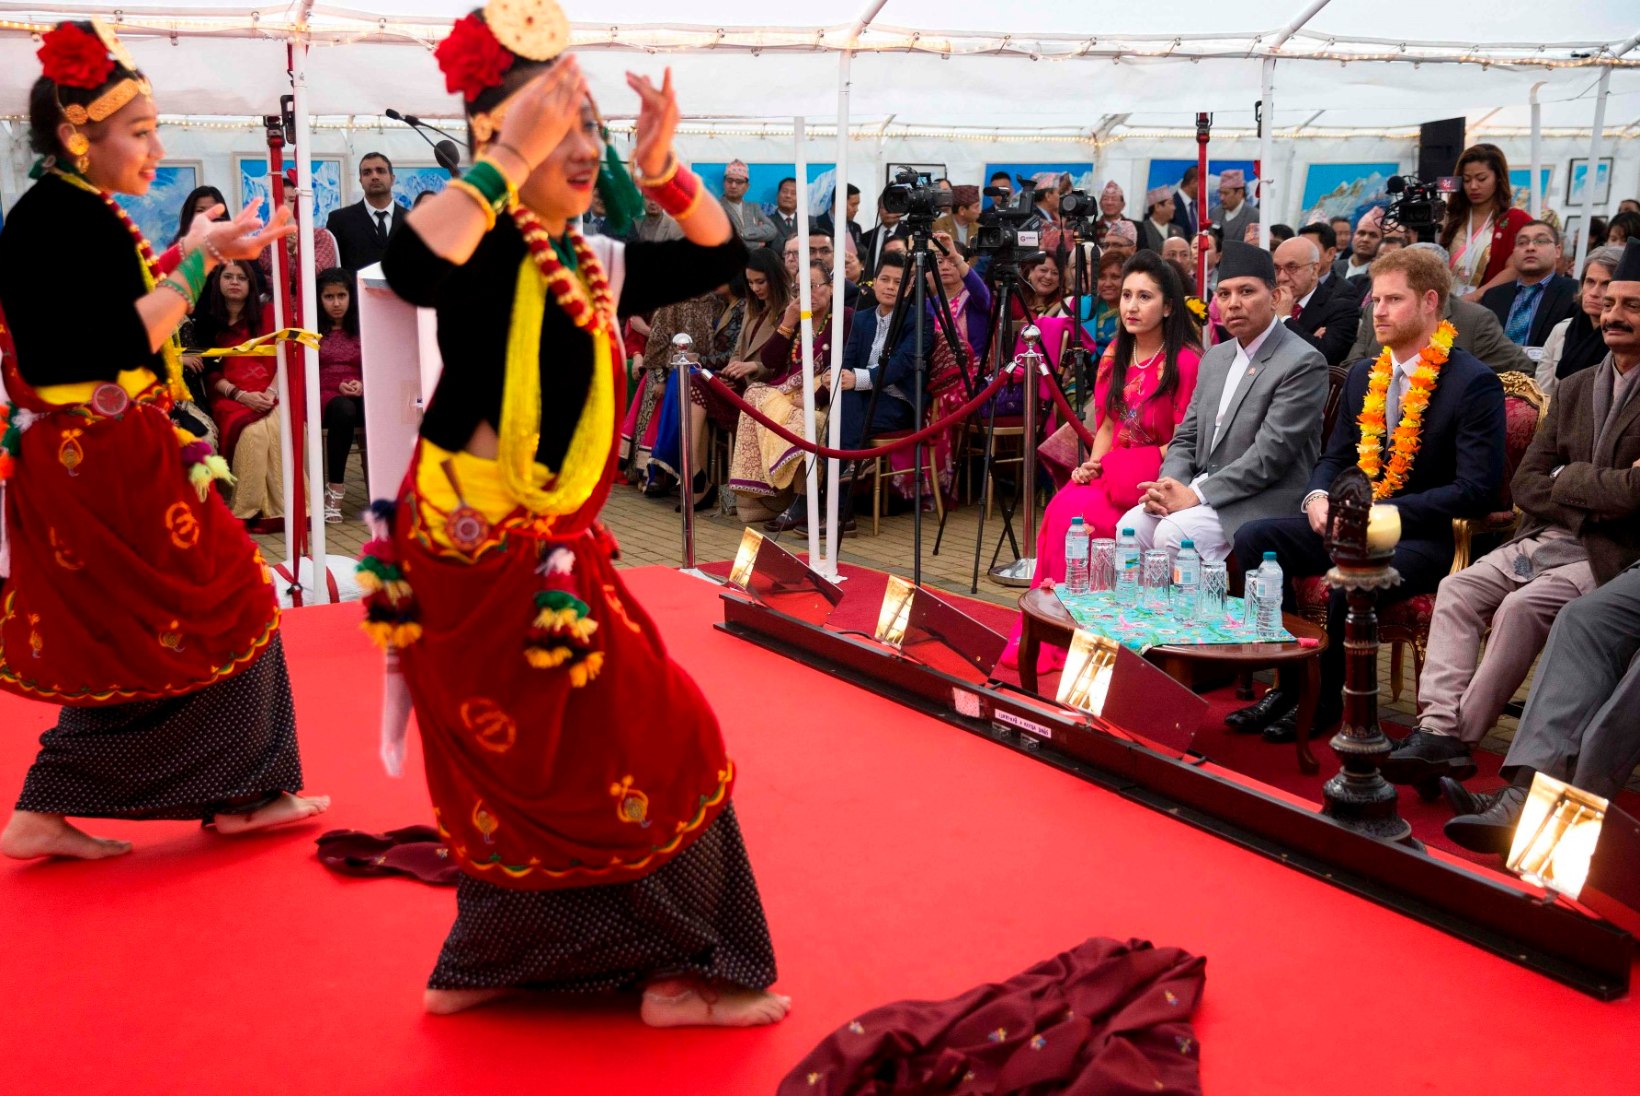 FOTOD | Prints Harry värvikirev külaskäik Nepali saatkonda